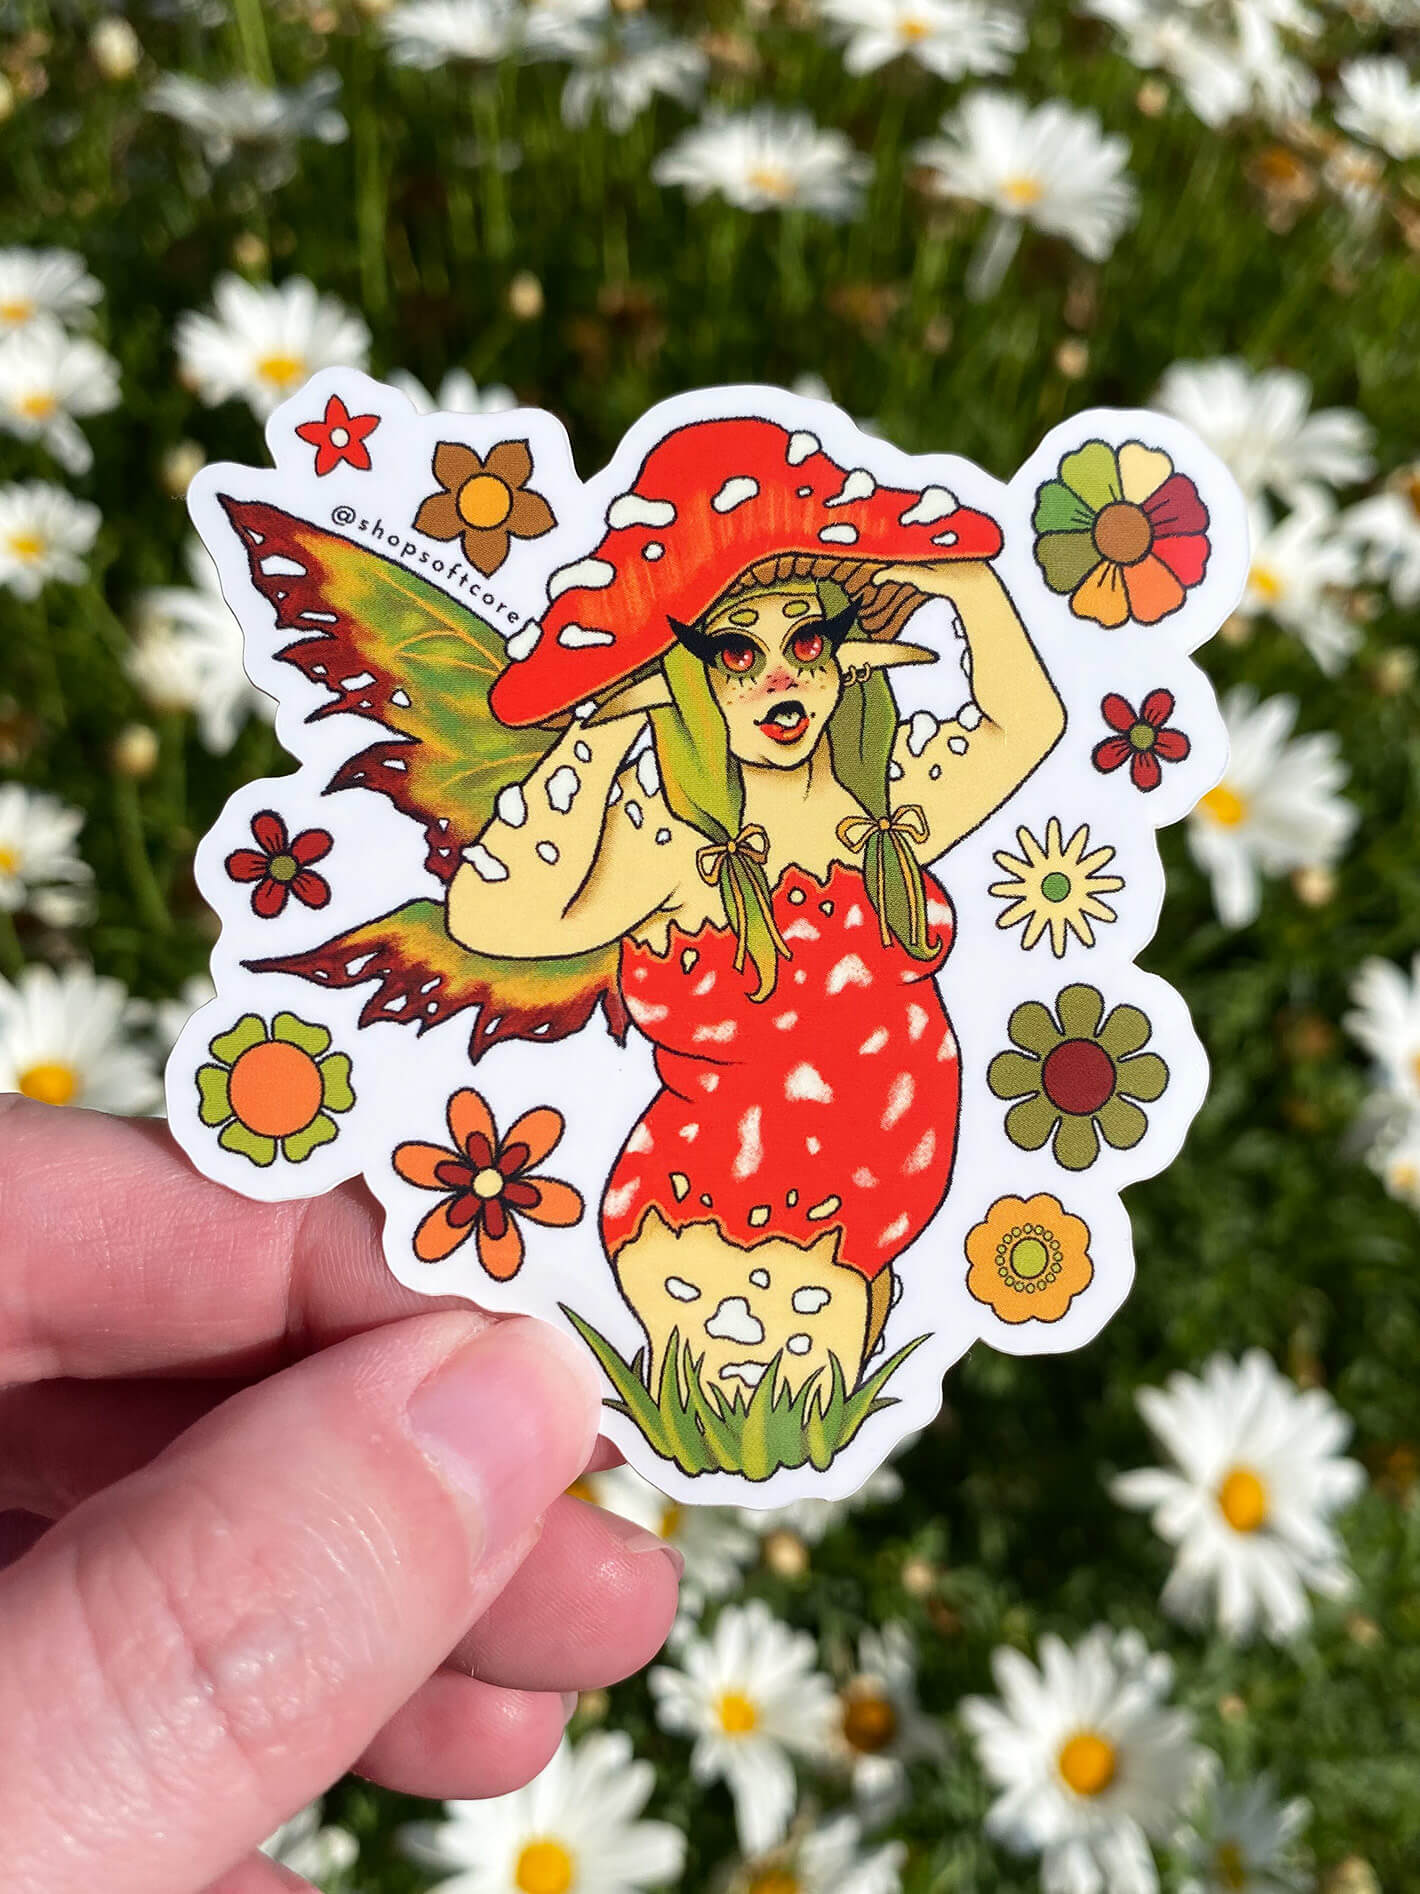 Mushroom fairy cottagecore sticker.